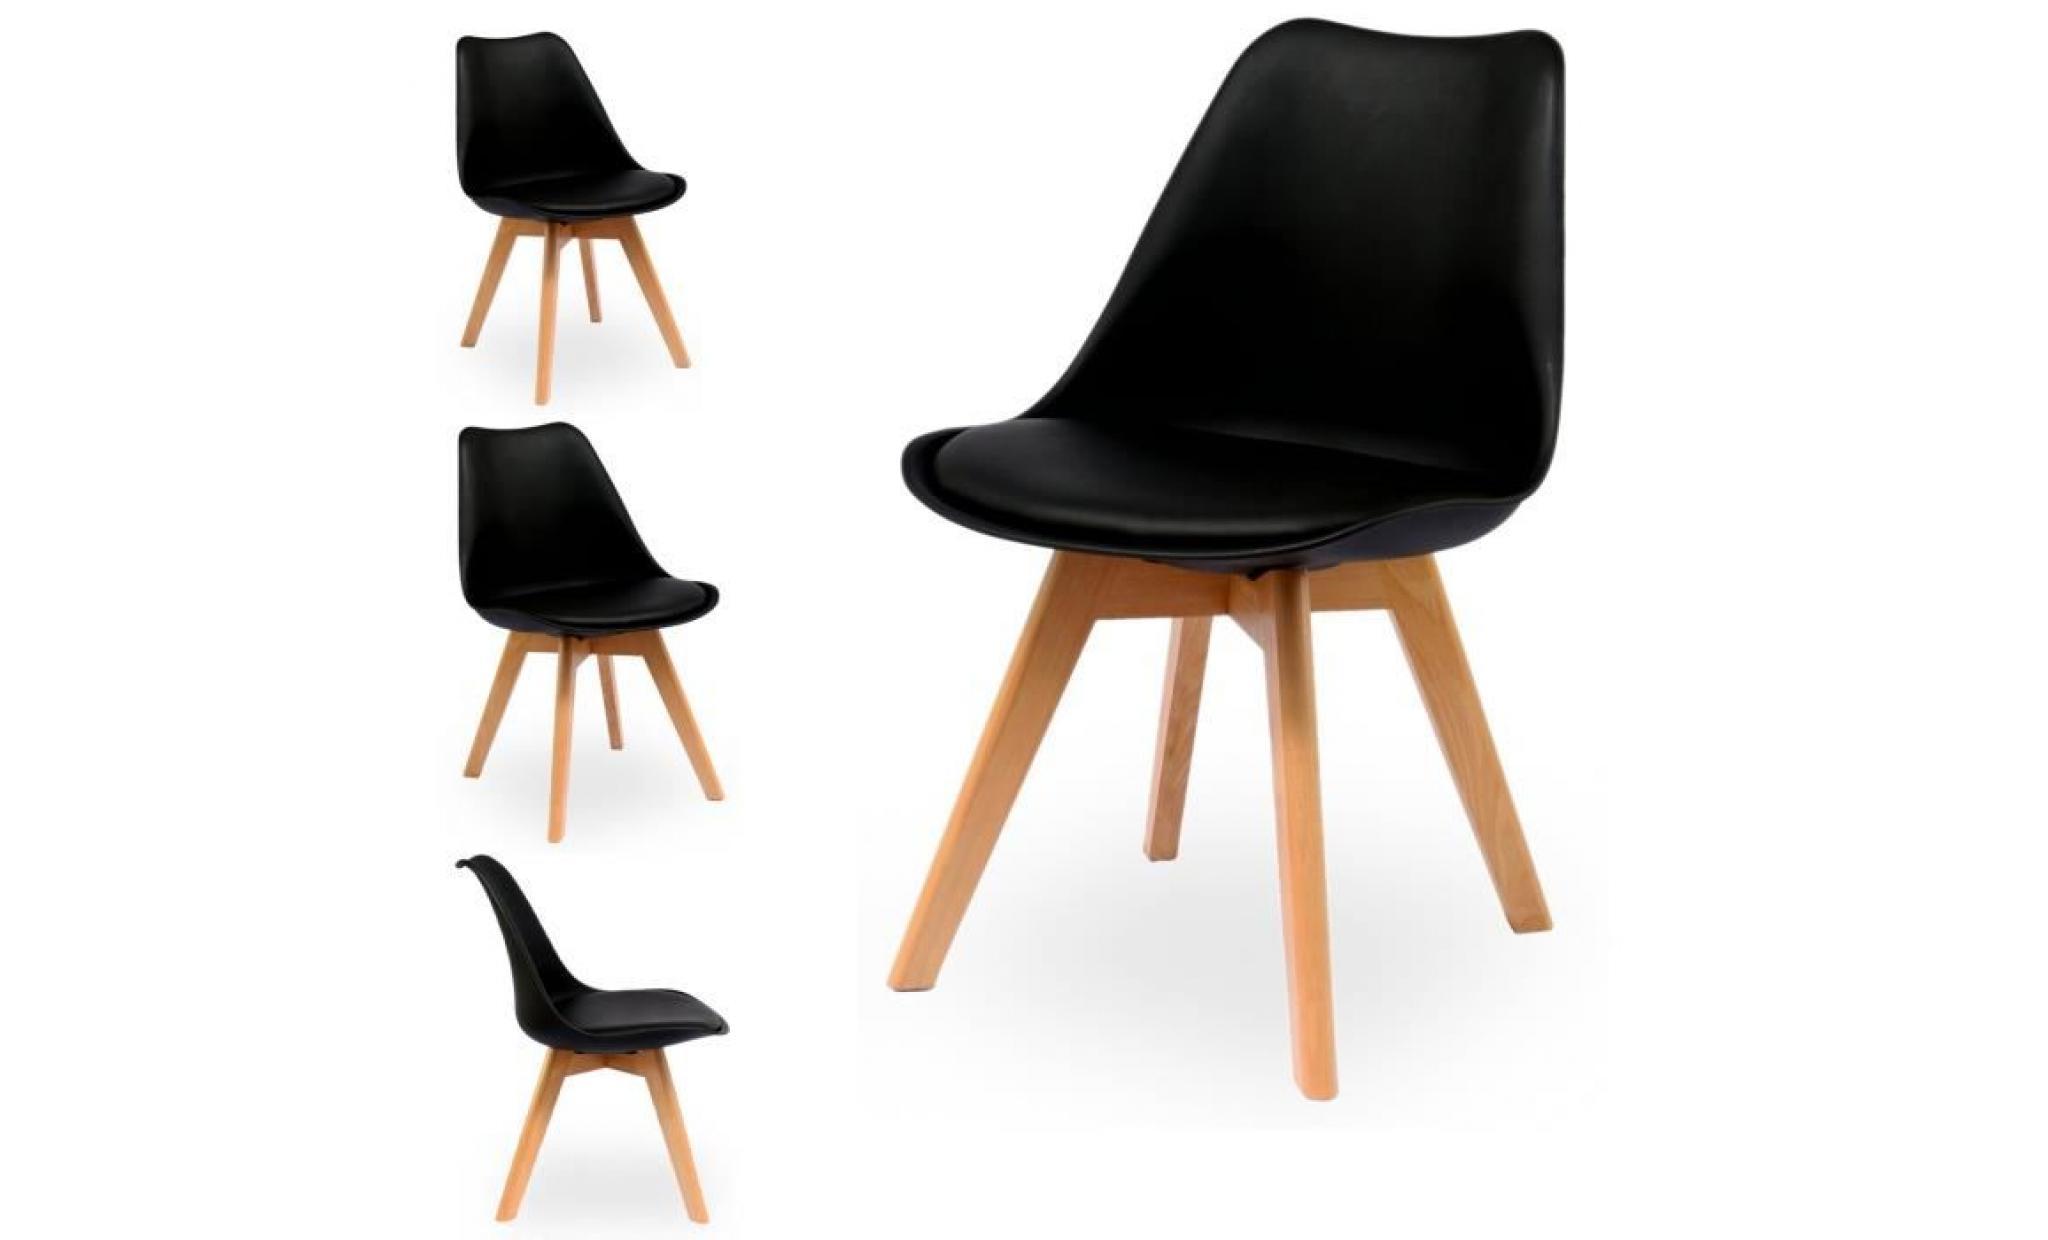 lot de 2 chaises  design scandinave coloris noir   skagen style scandinave, la tendance ultime pour votre salle à manger ou cuisine